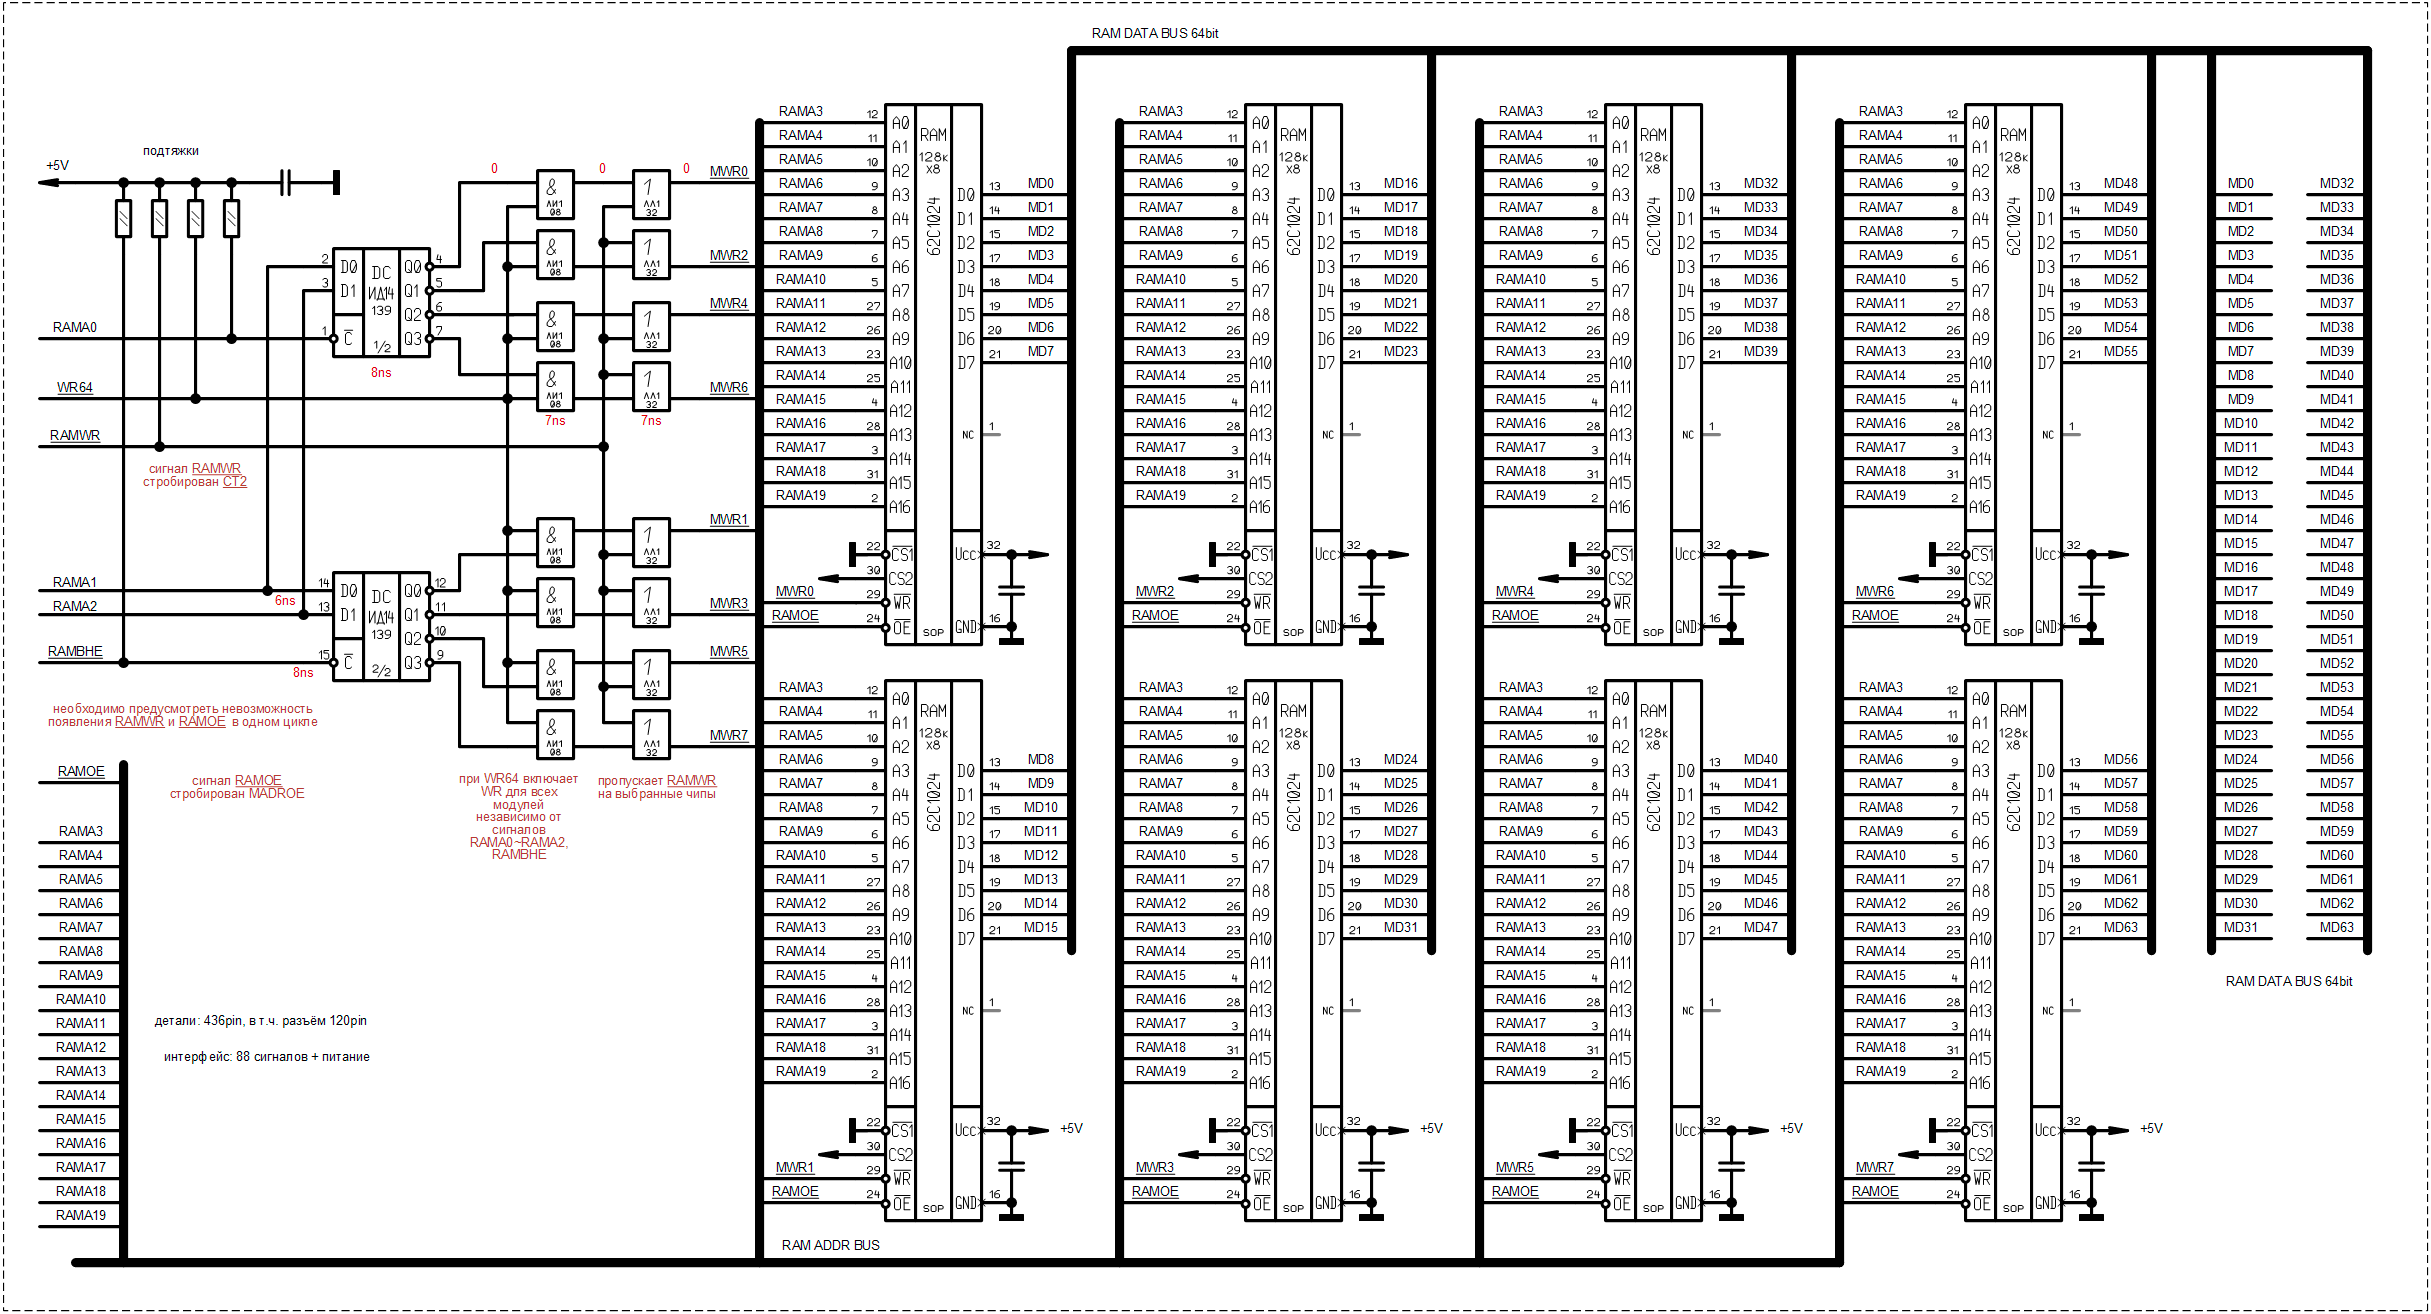 8086_RAM_module_schematic.png